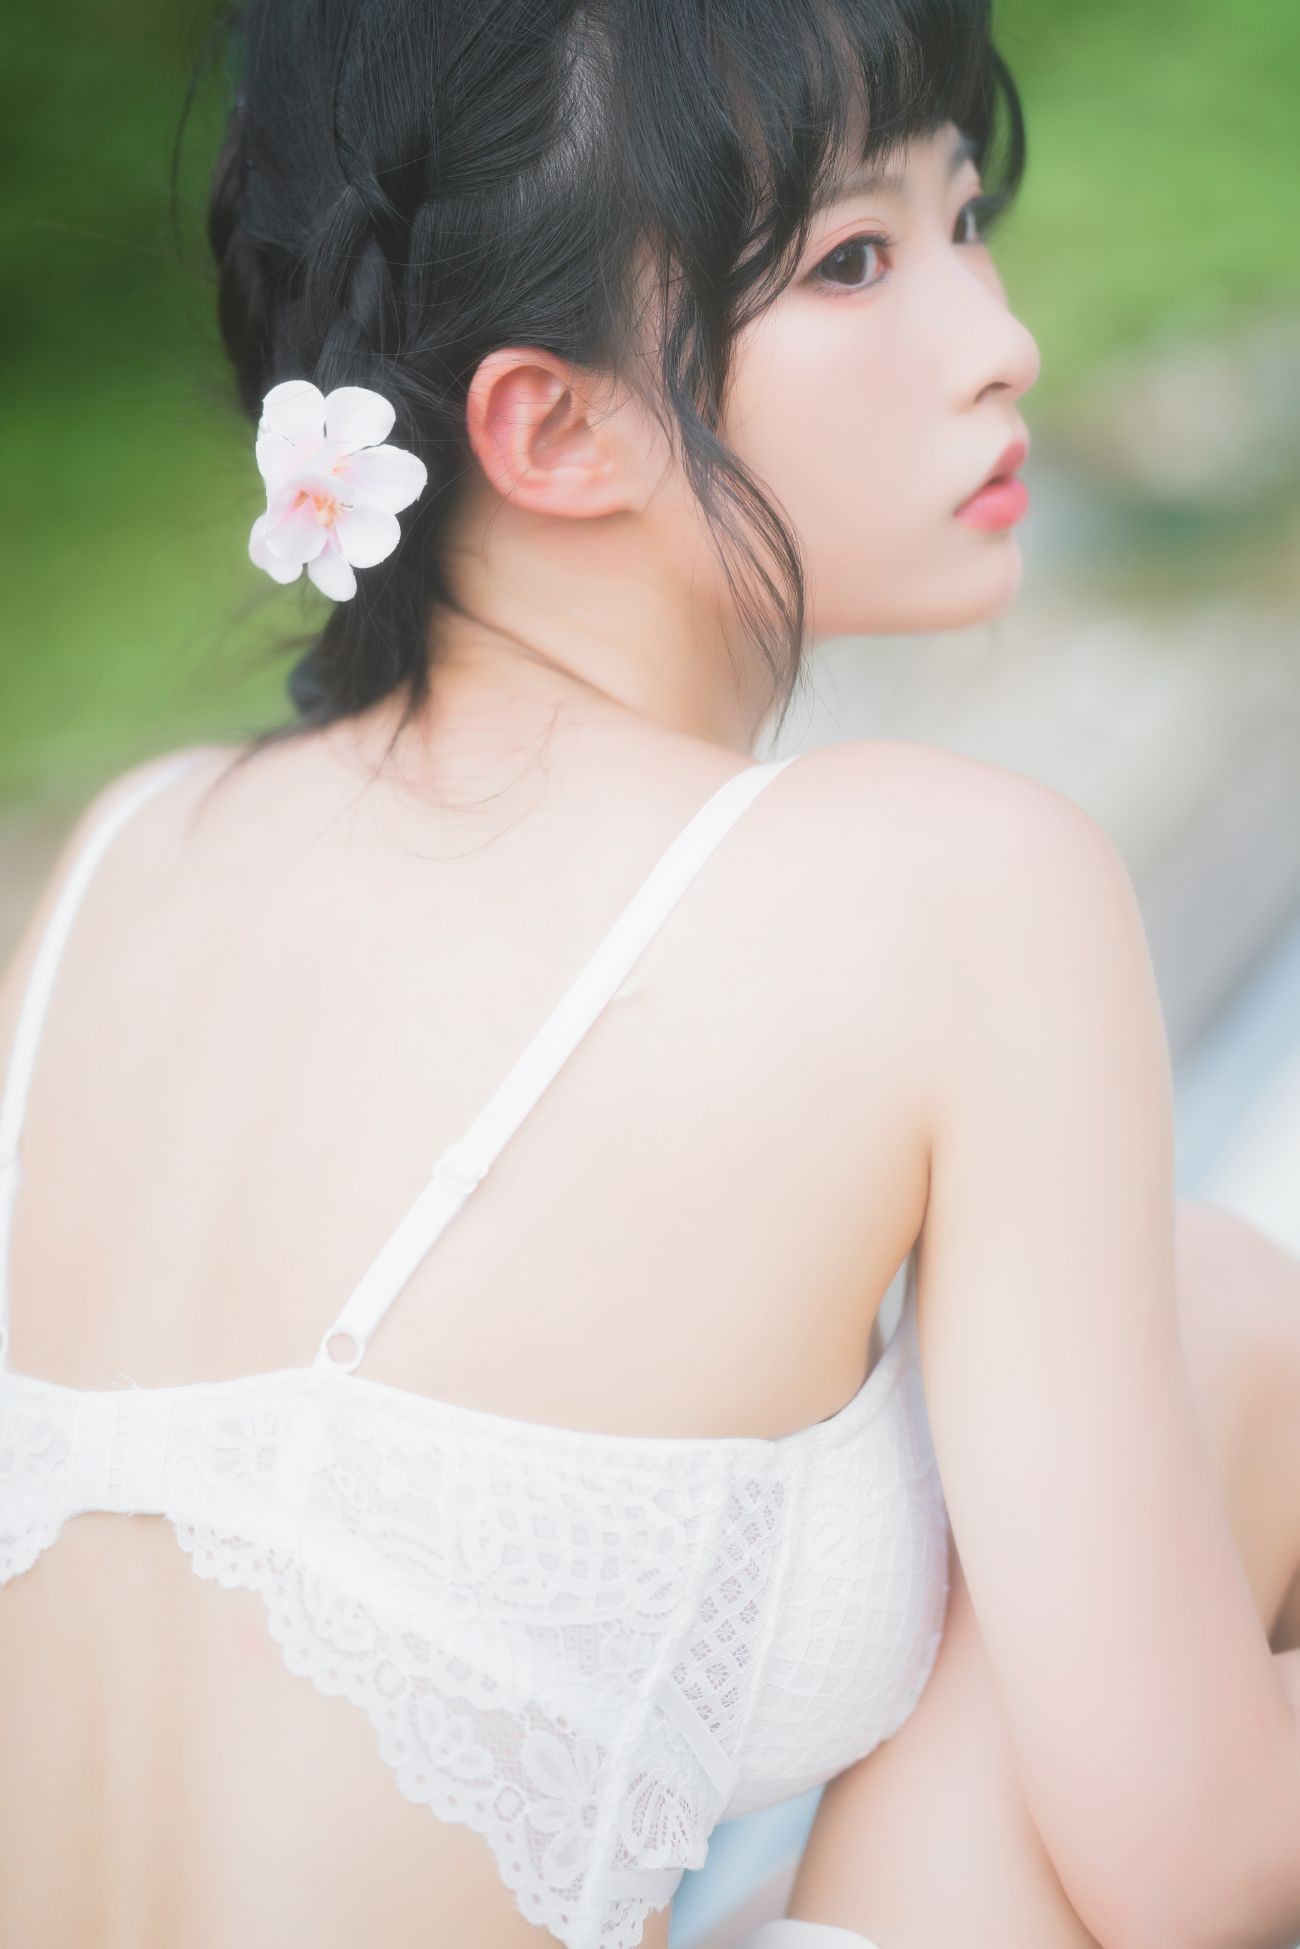 微博美少女清水由乃Cosplay性感写真蕾丝花园 (22)